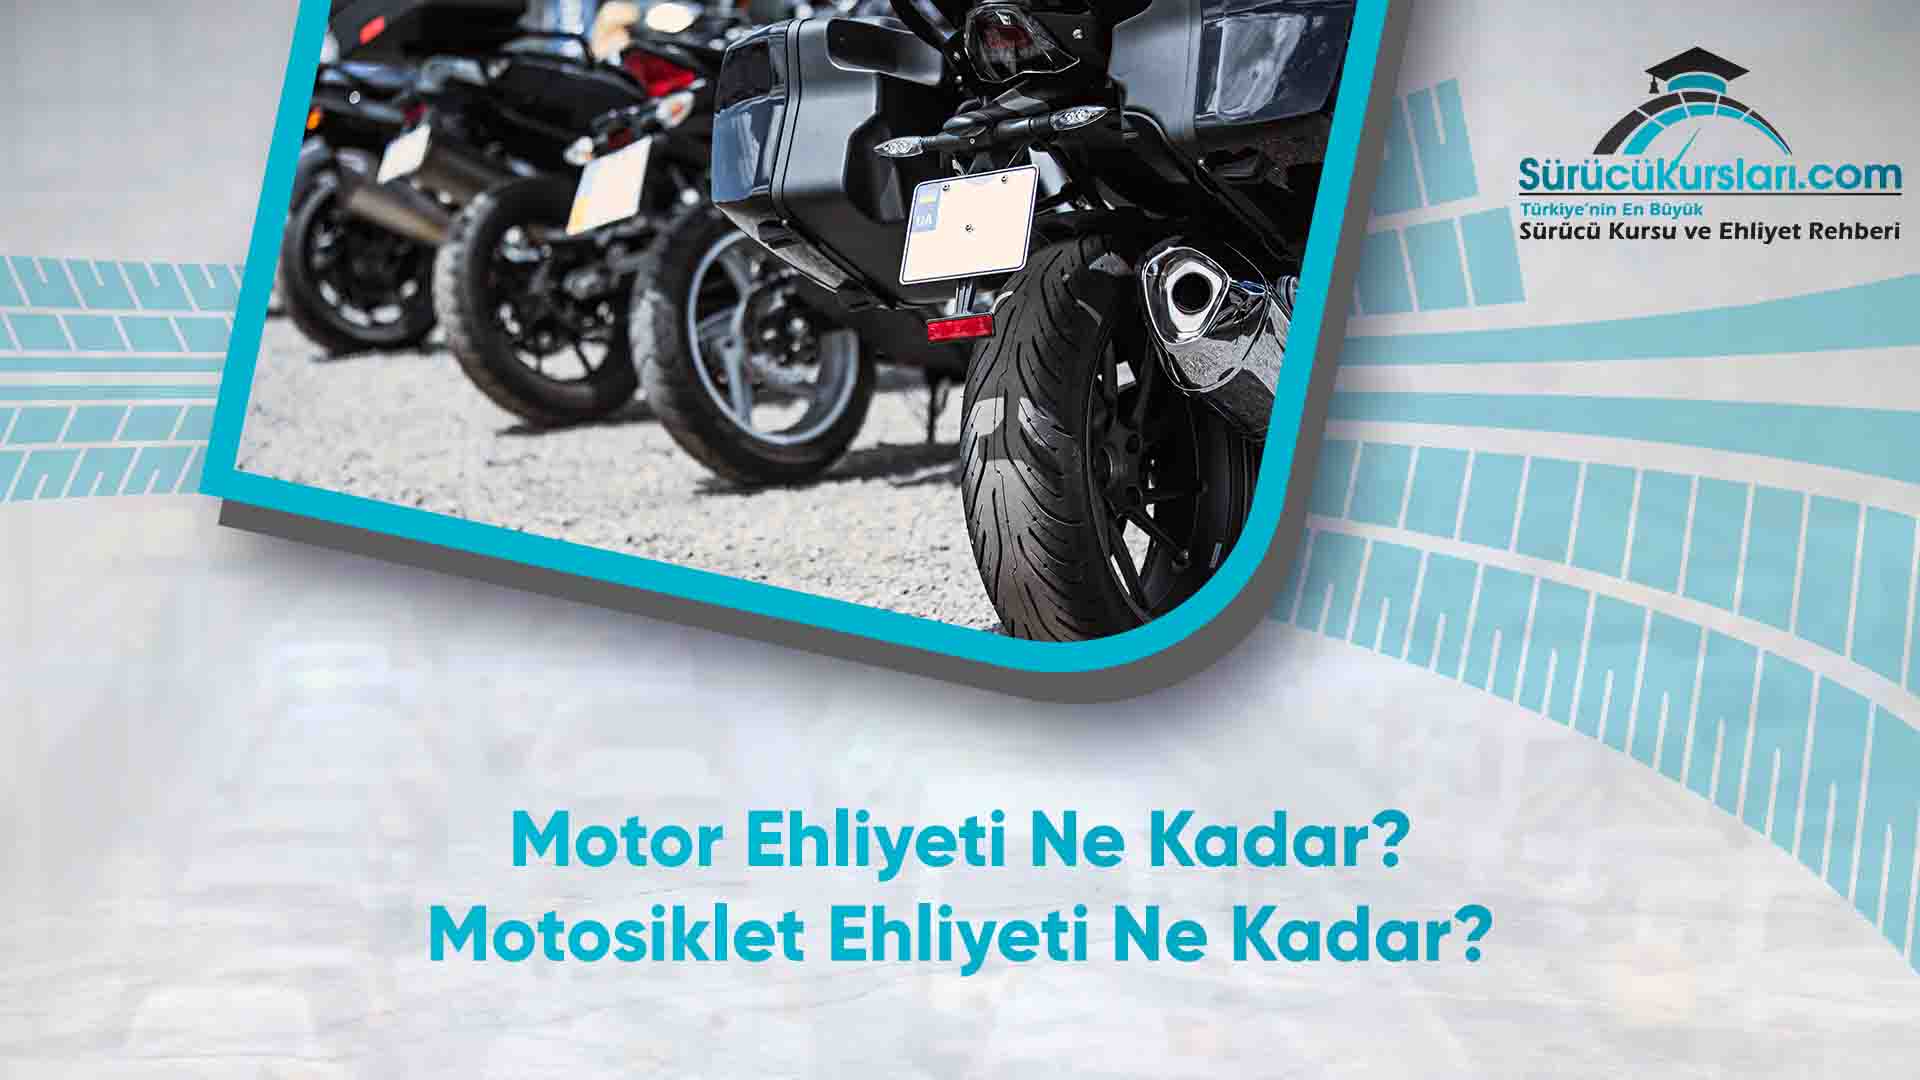 Motor Ehliyeti Ne Kadar - Motosiklet Ehliyeti Ne Kadar